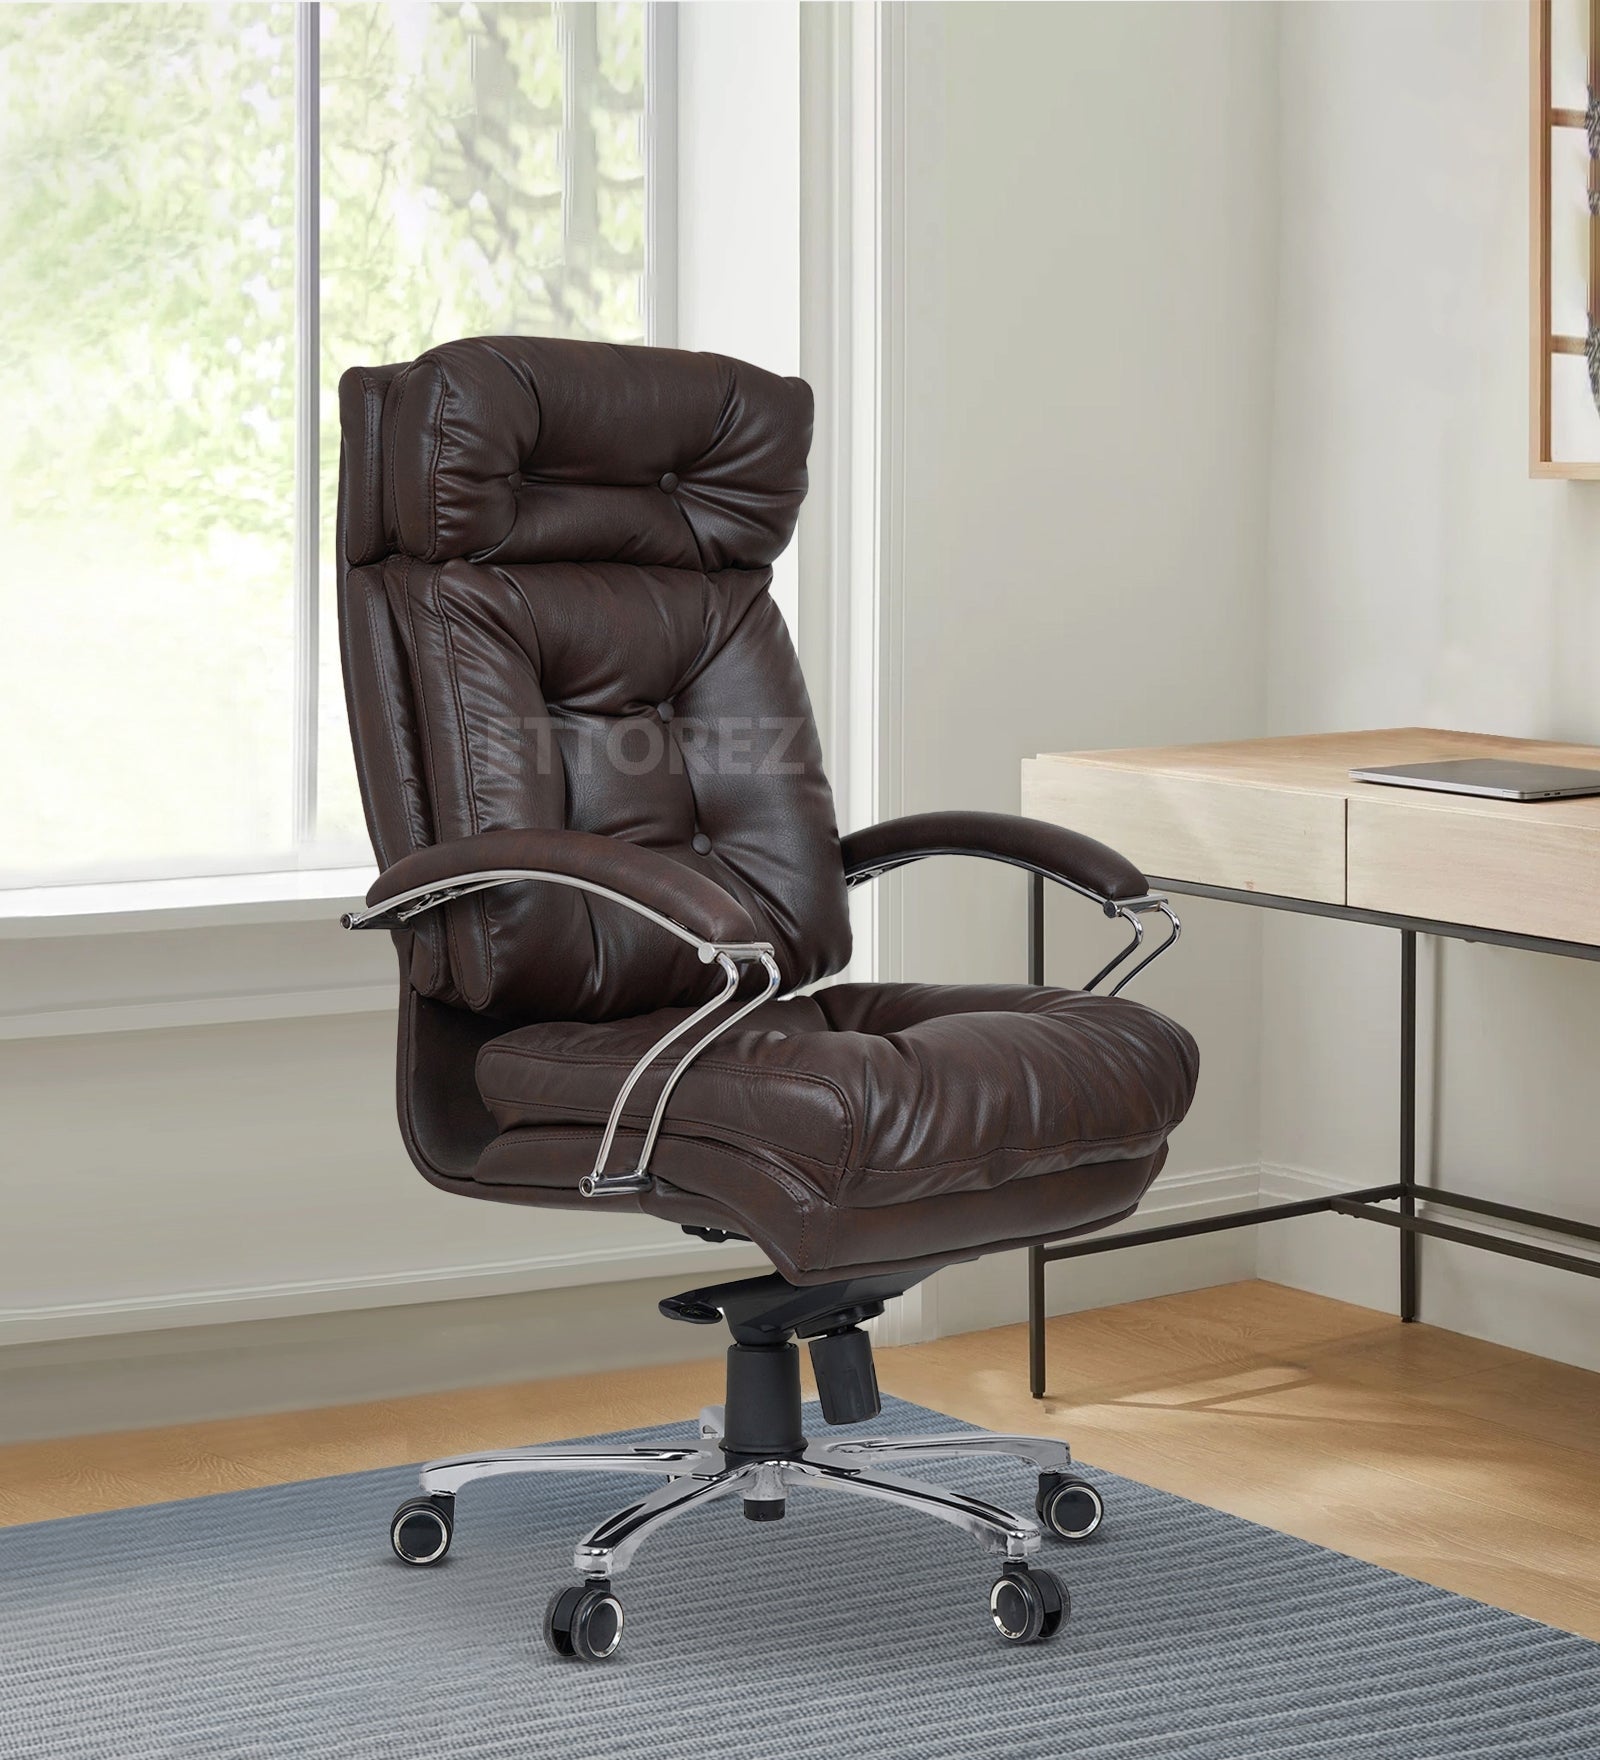 Ettorez GRANDEUR Ultra Premium Ergonomic Boss Chair